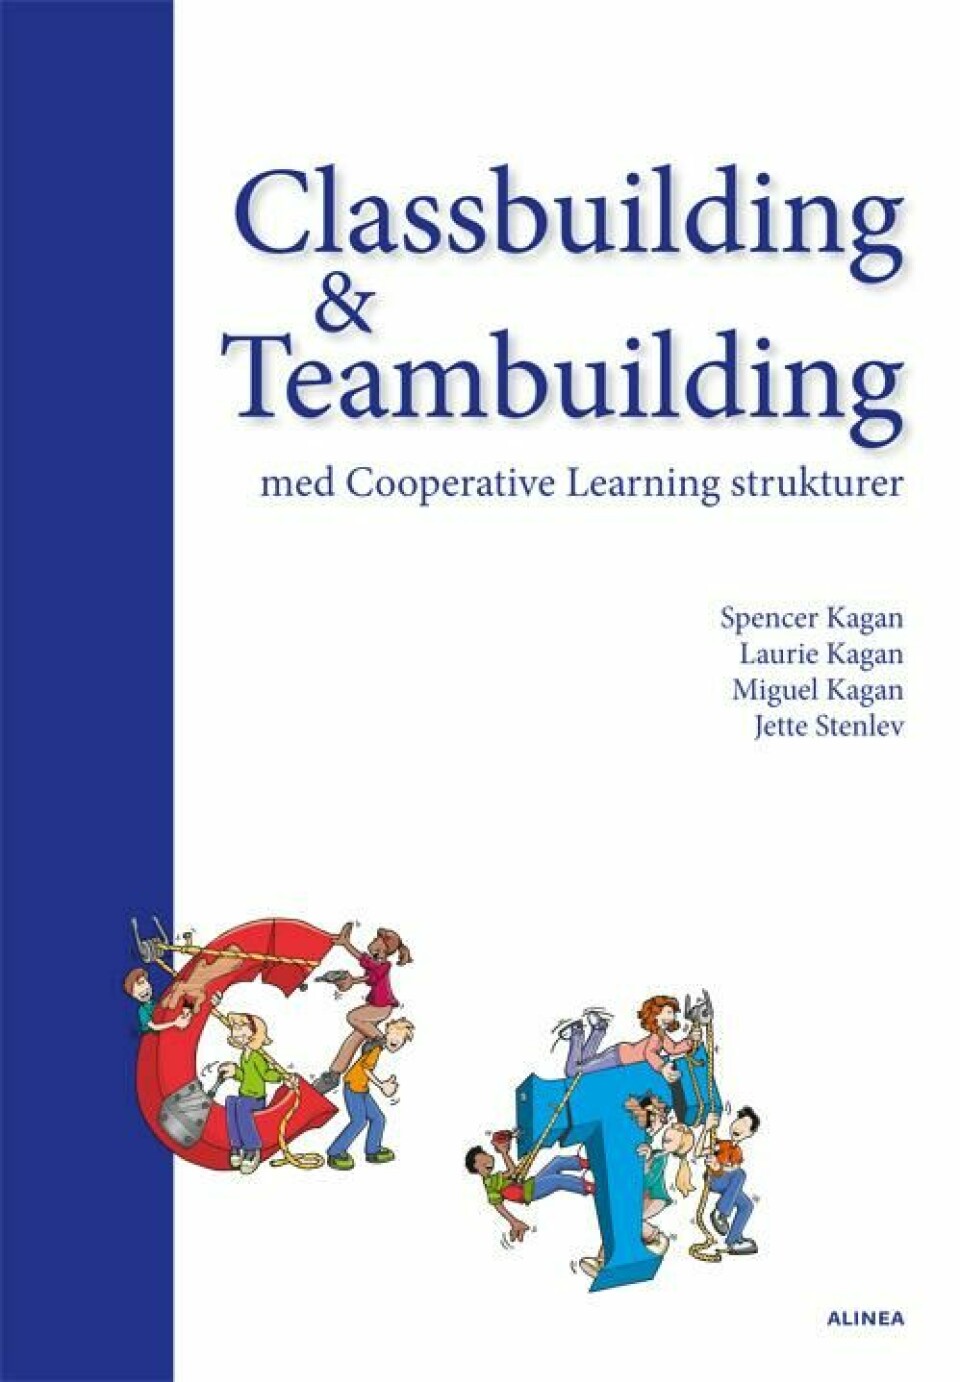 Classbuilding & Teambuilding